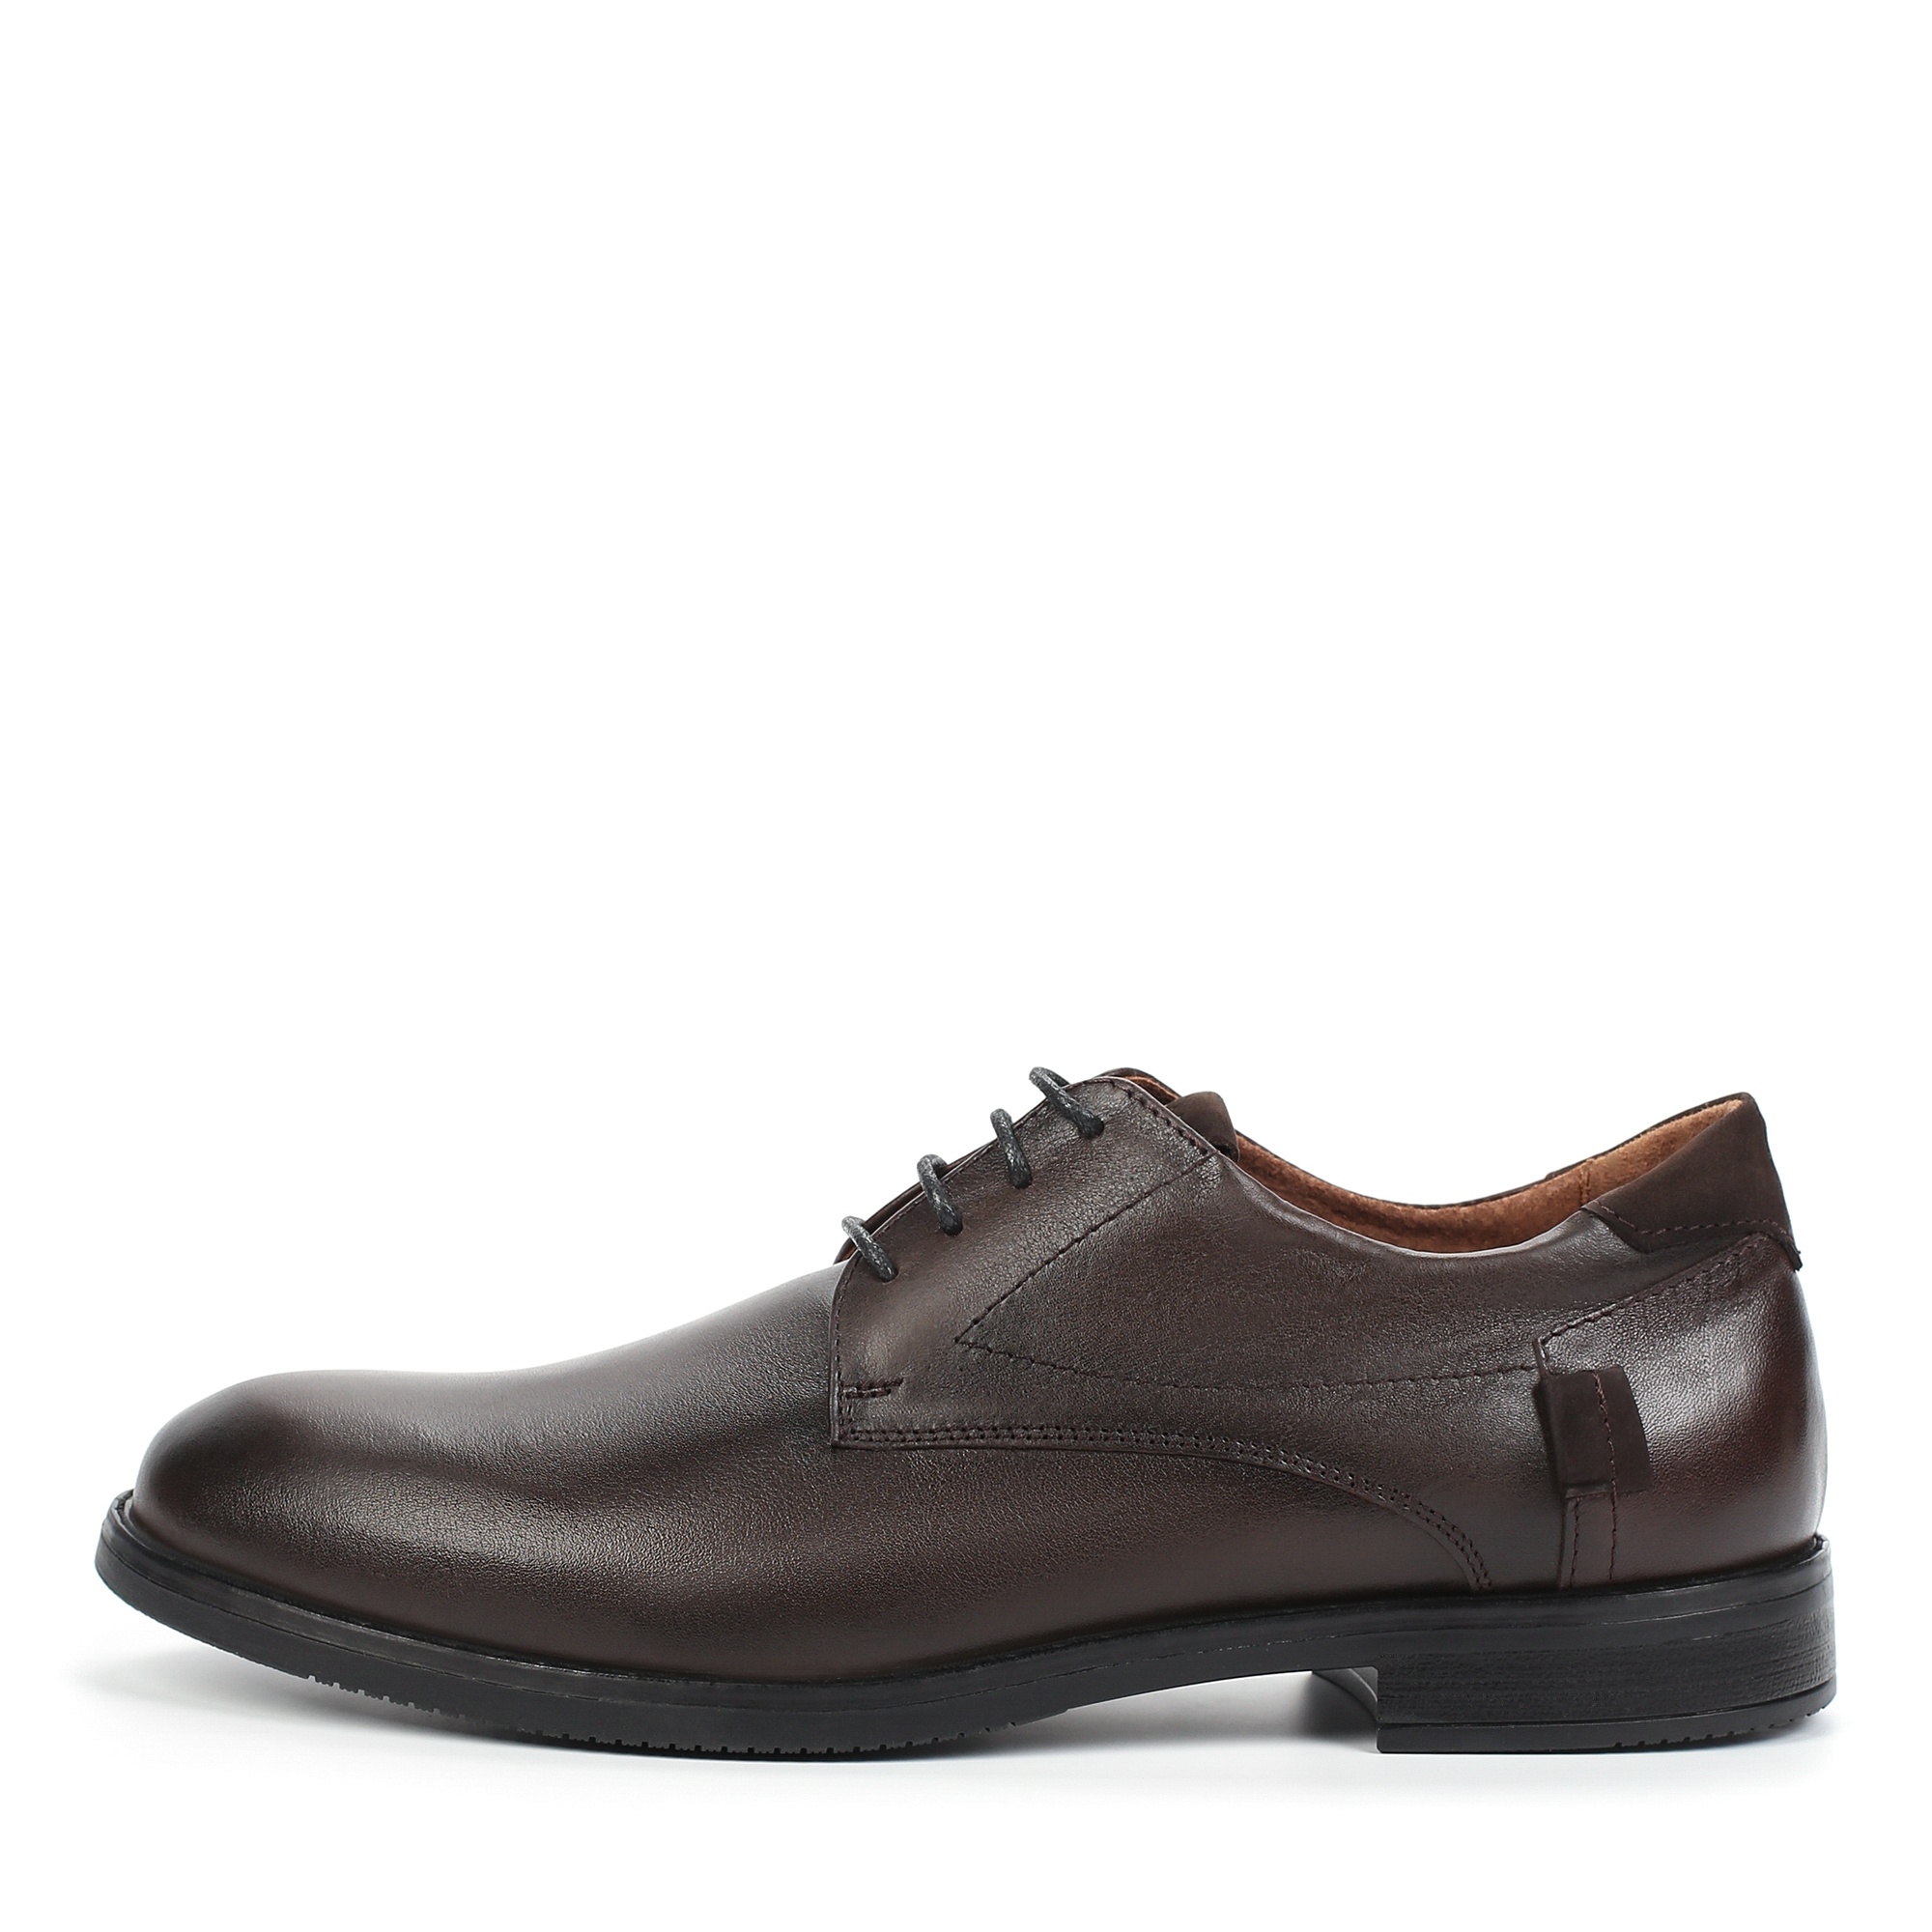 Туфли/полуботинки Thomas Munz 302-049A-1109, цвет коричневый, размер 42